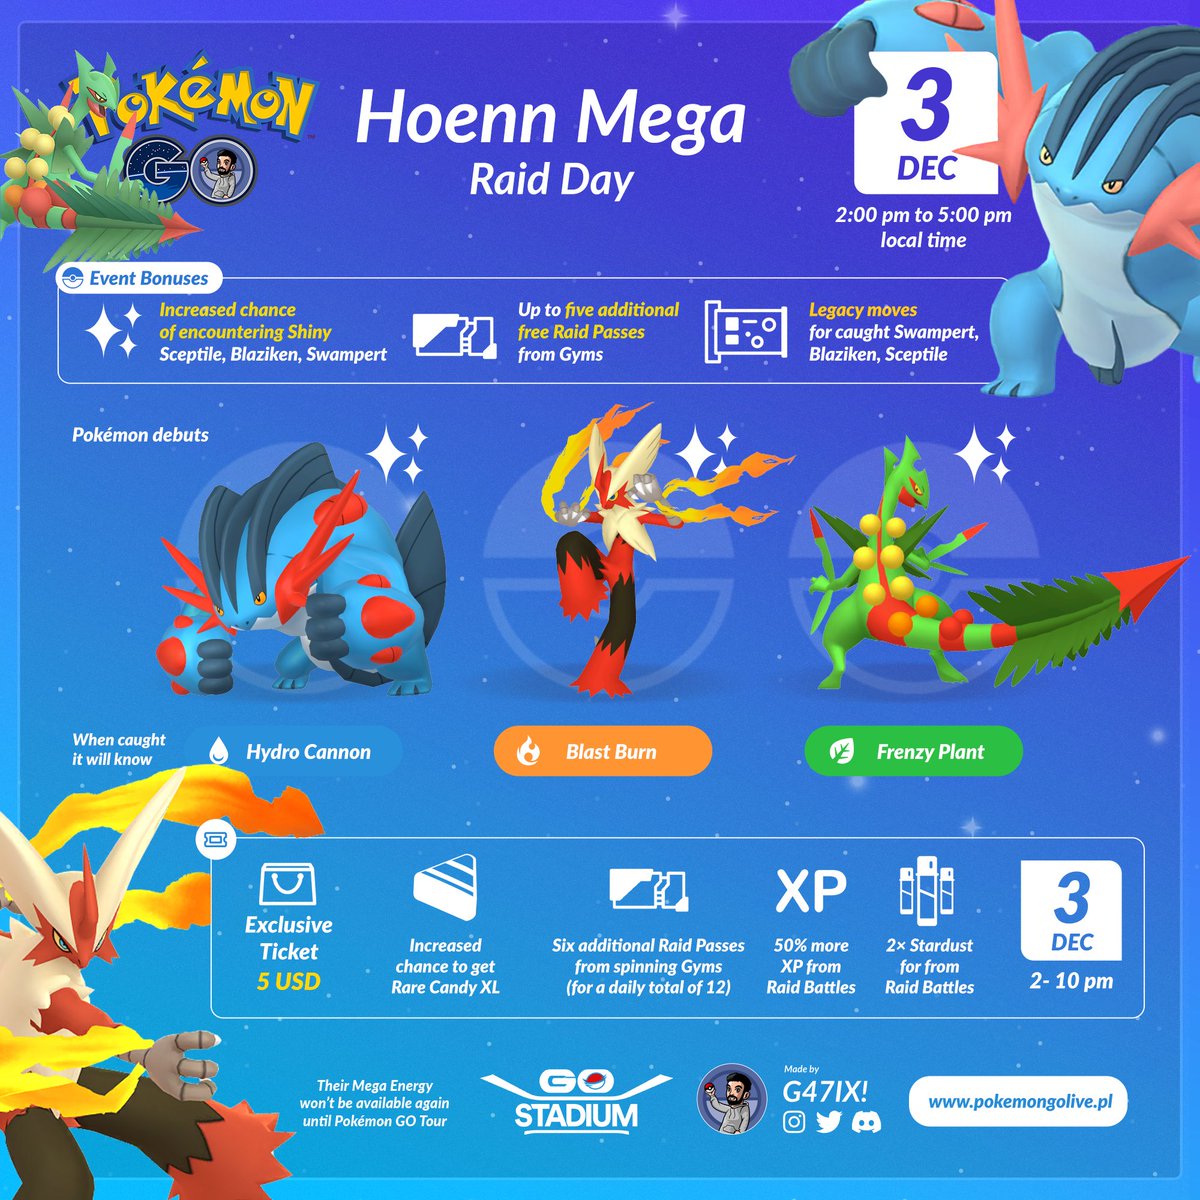 Jogada Excelente on X: Pokémon GO: O Dia de Megarreides de Hoenn contará  com o lançamento das Megaevoluções de Sceptile, Blaziken e Swampert. O  evento é gratuito para todos Treinadores, mas você